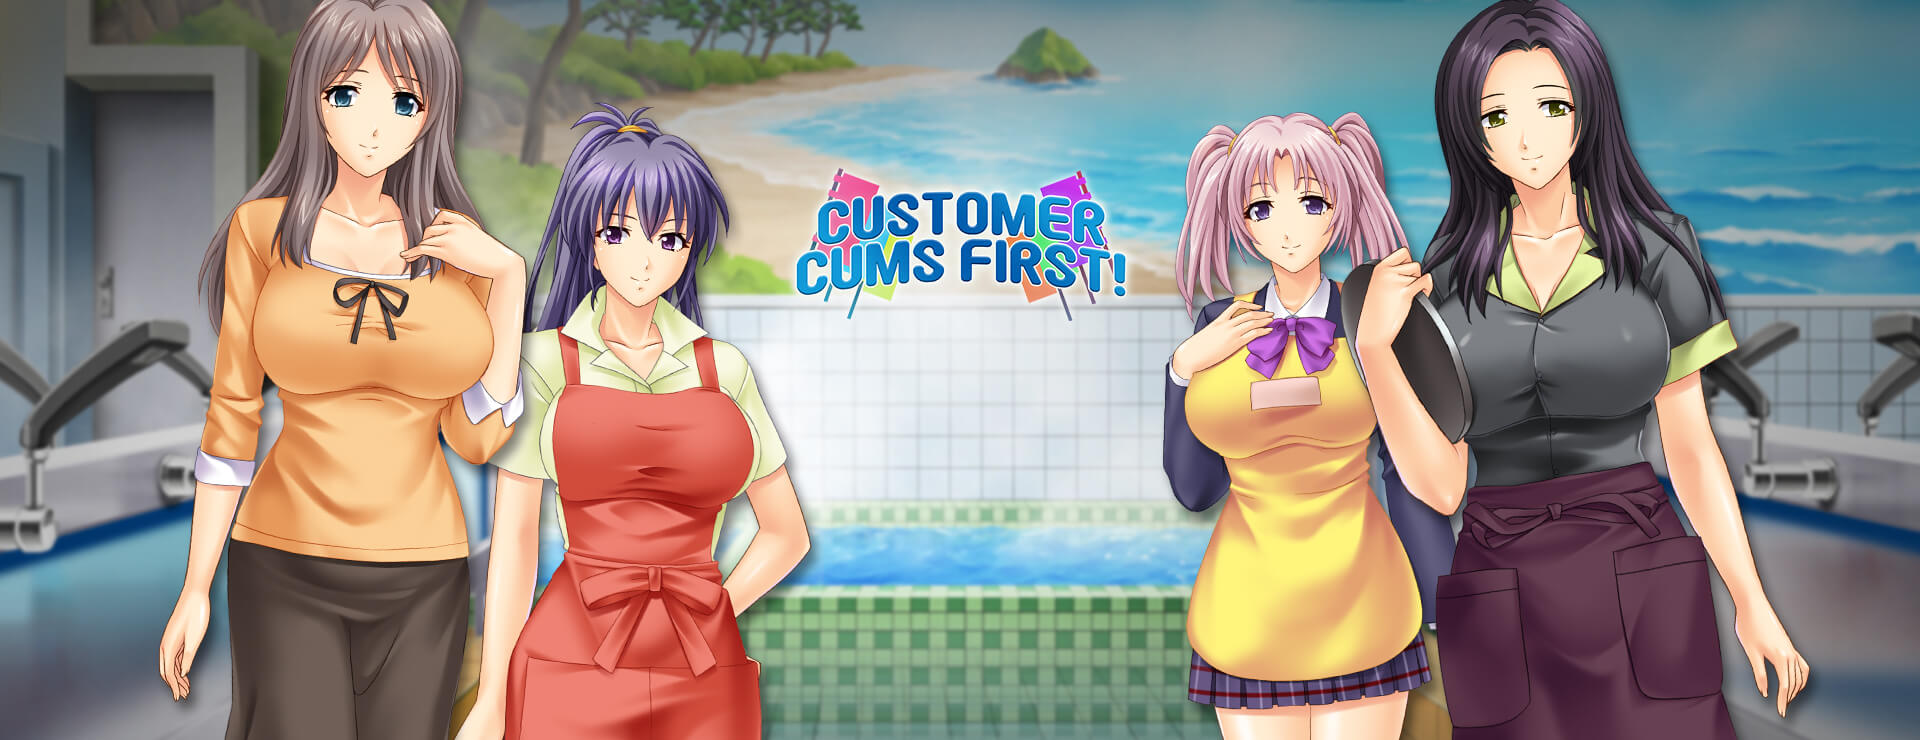 Customer Cums First - ビジュアルノベル ゲーム